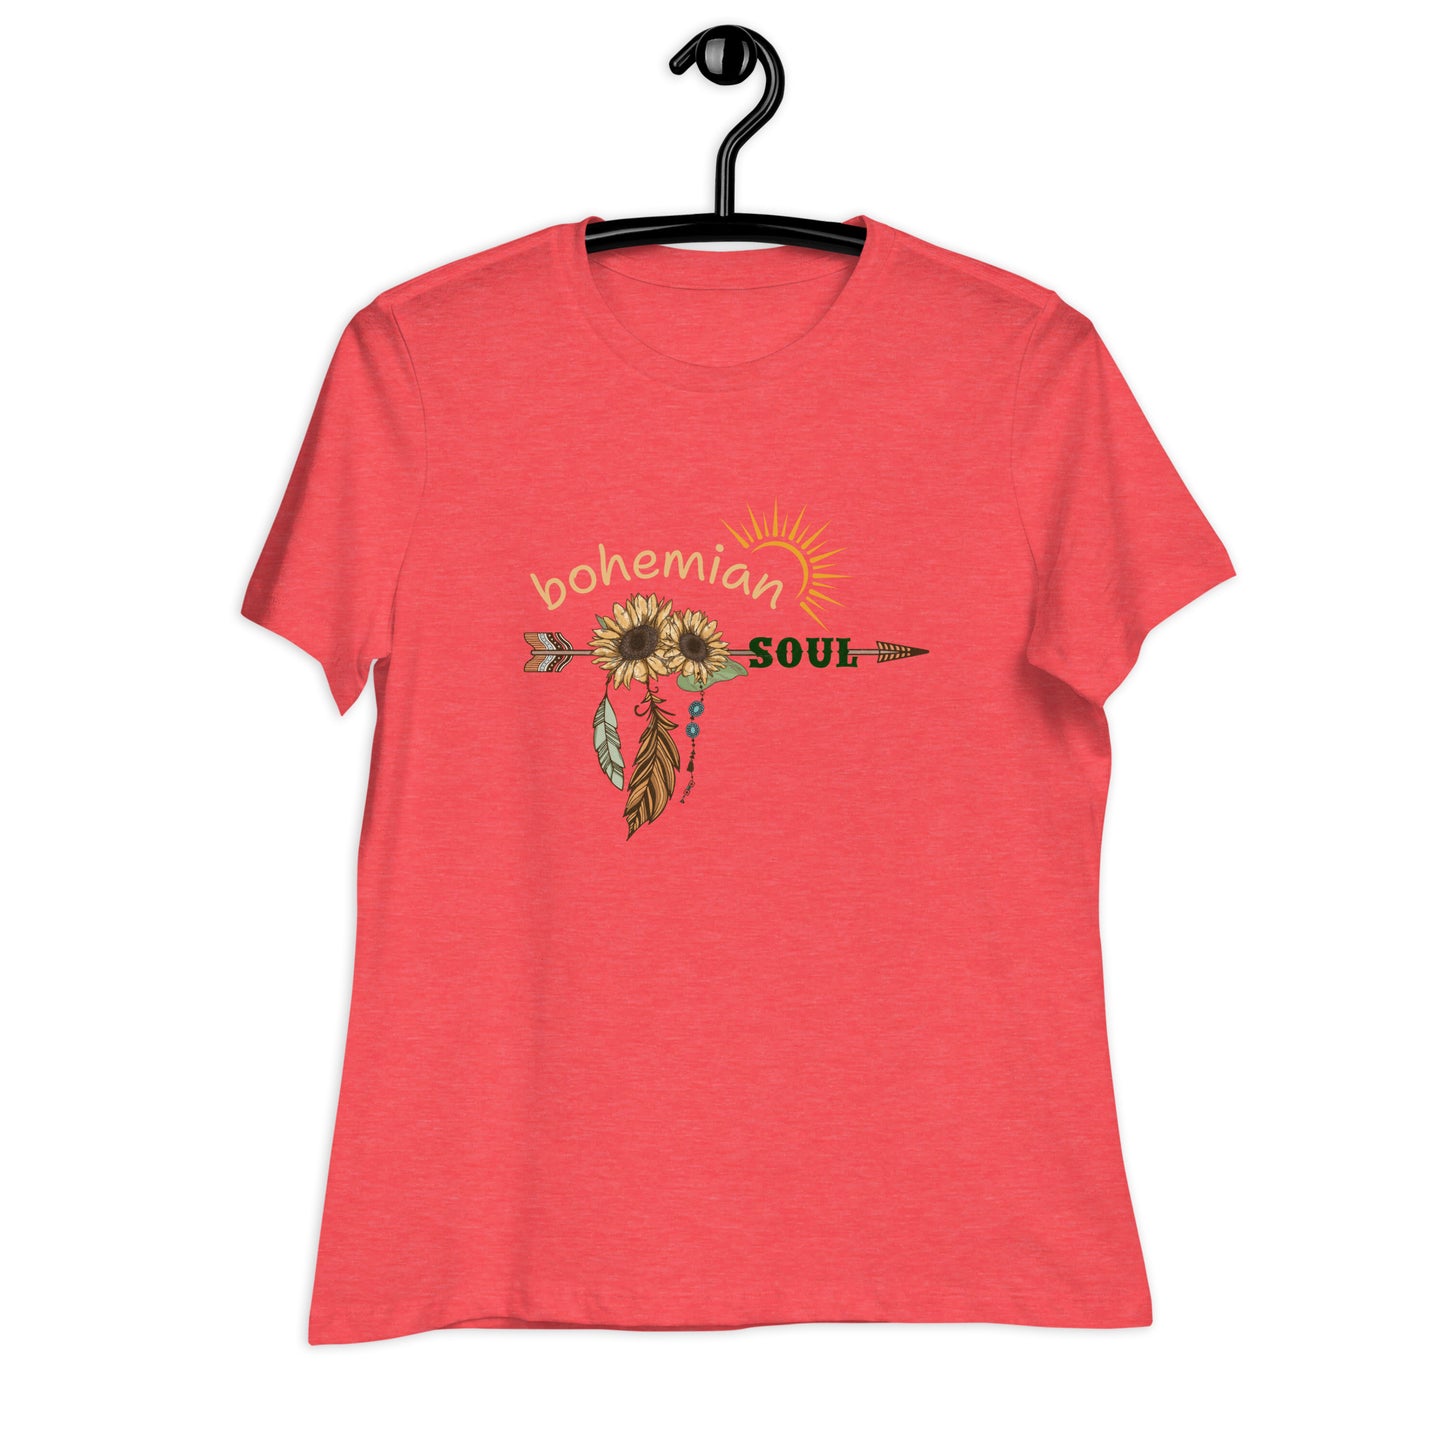 Bohemian Soul Women's Relaxed T-Shirt